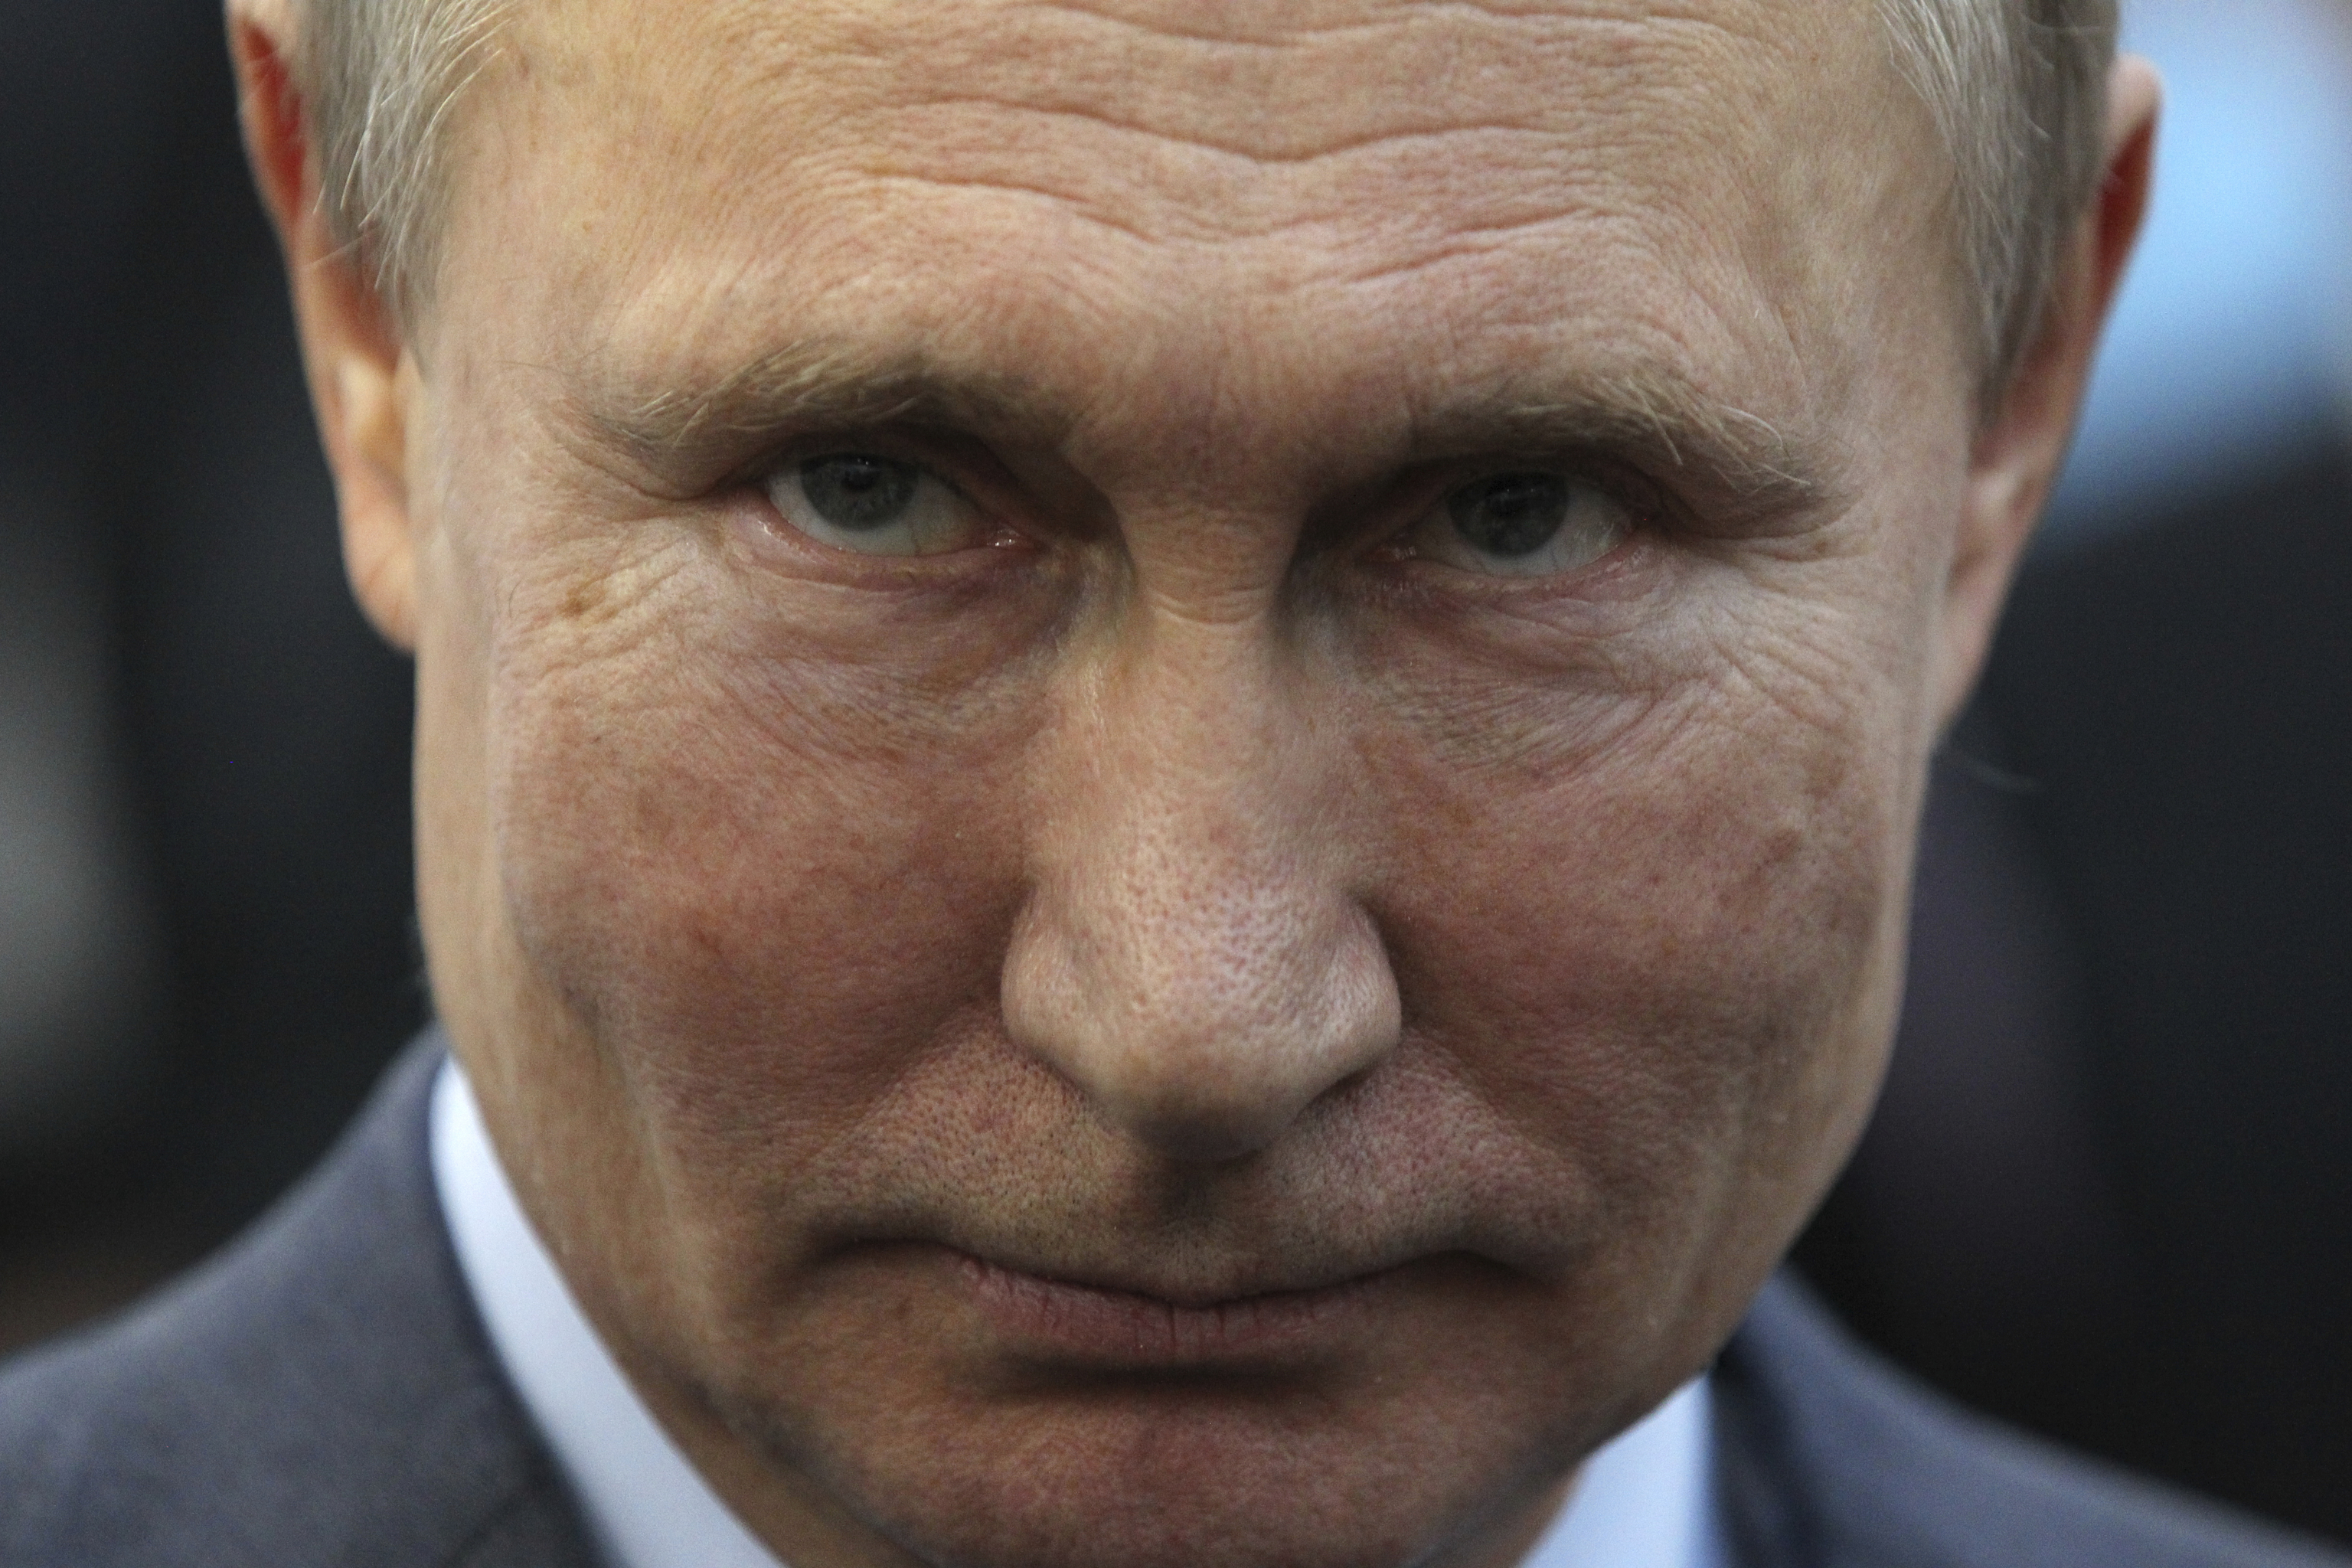 Estallidos de ira y un ego desmedido: el búnker mental de Vladimir Putin |  Internacional